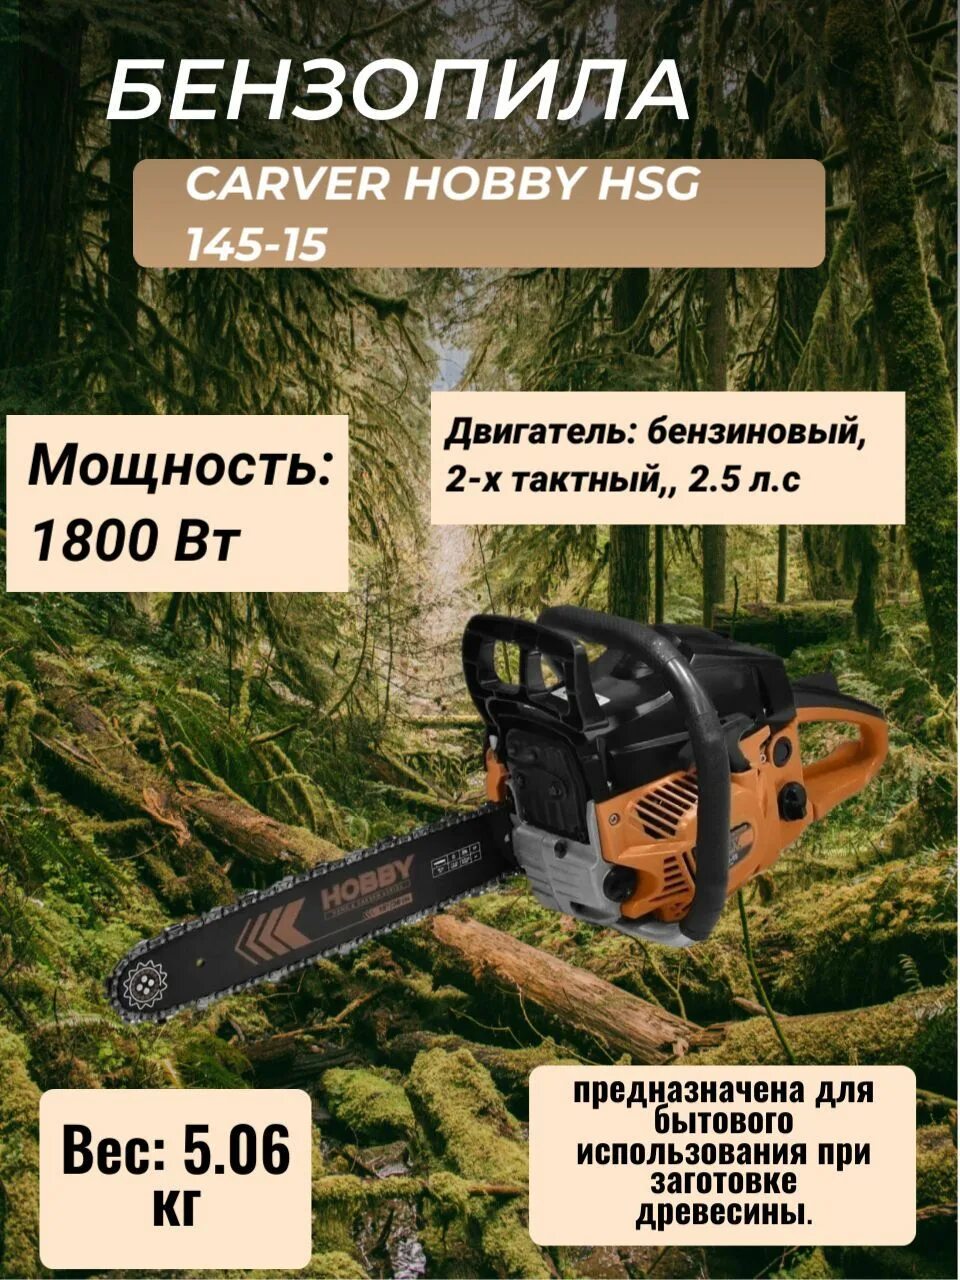 Бензопила carver hobby. Carver Hobby HSG 145-15. Бензопила Hobby 145-15. Пила бенз. Carver Hobby HSG 145-15 (15",0,325-1,5-64зв) 2шт/уп. Бензопила HSG 145 15 сборка.